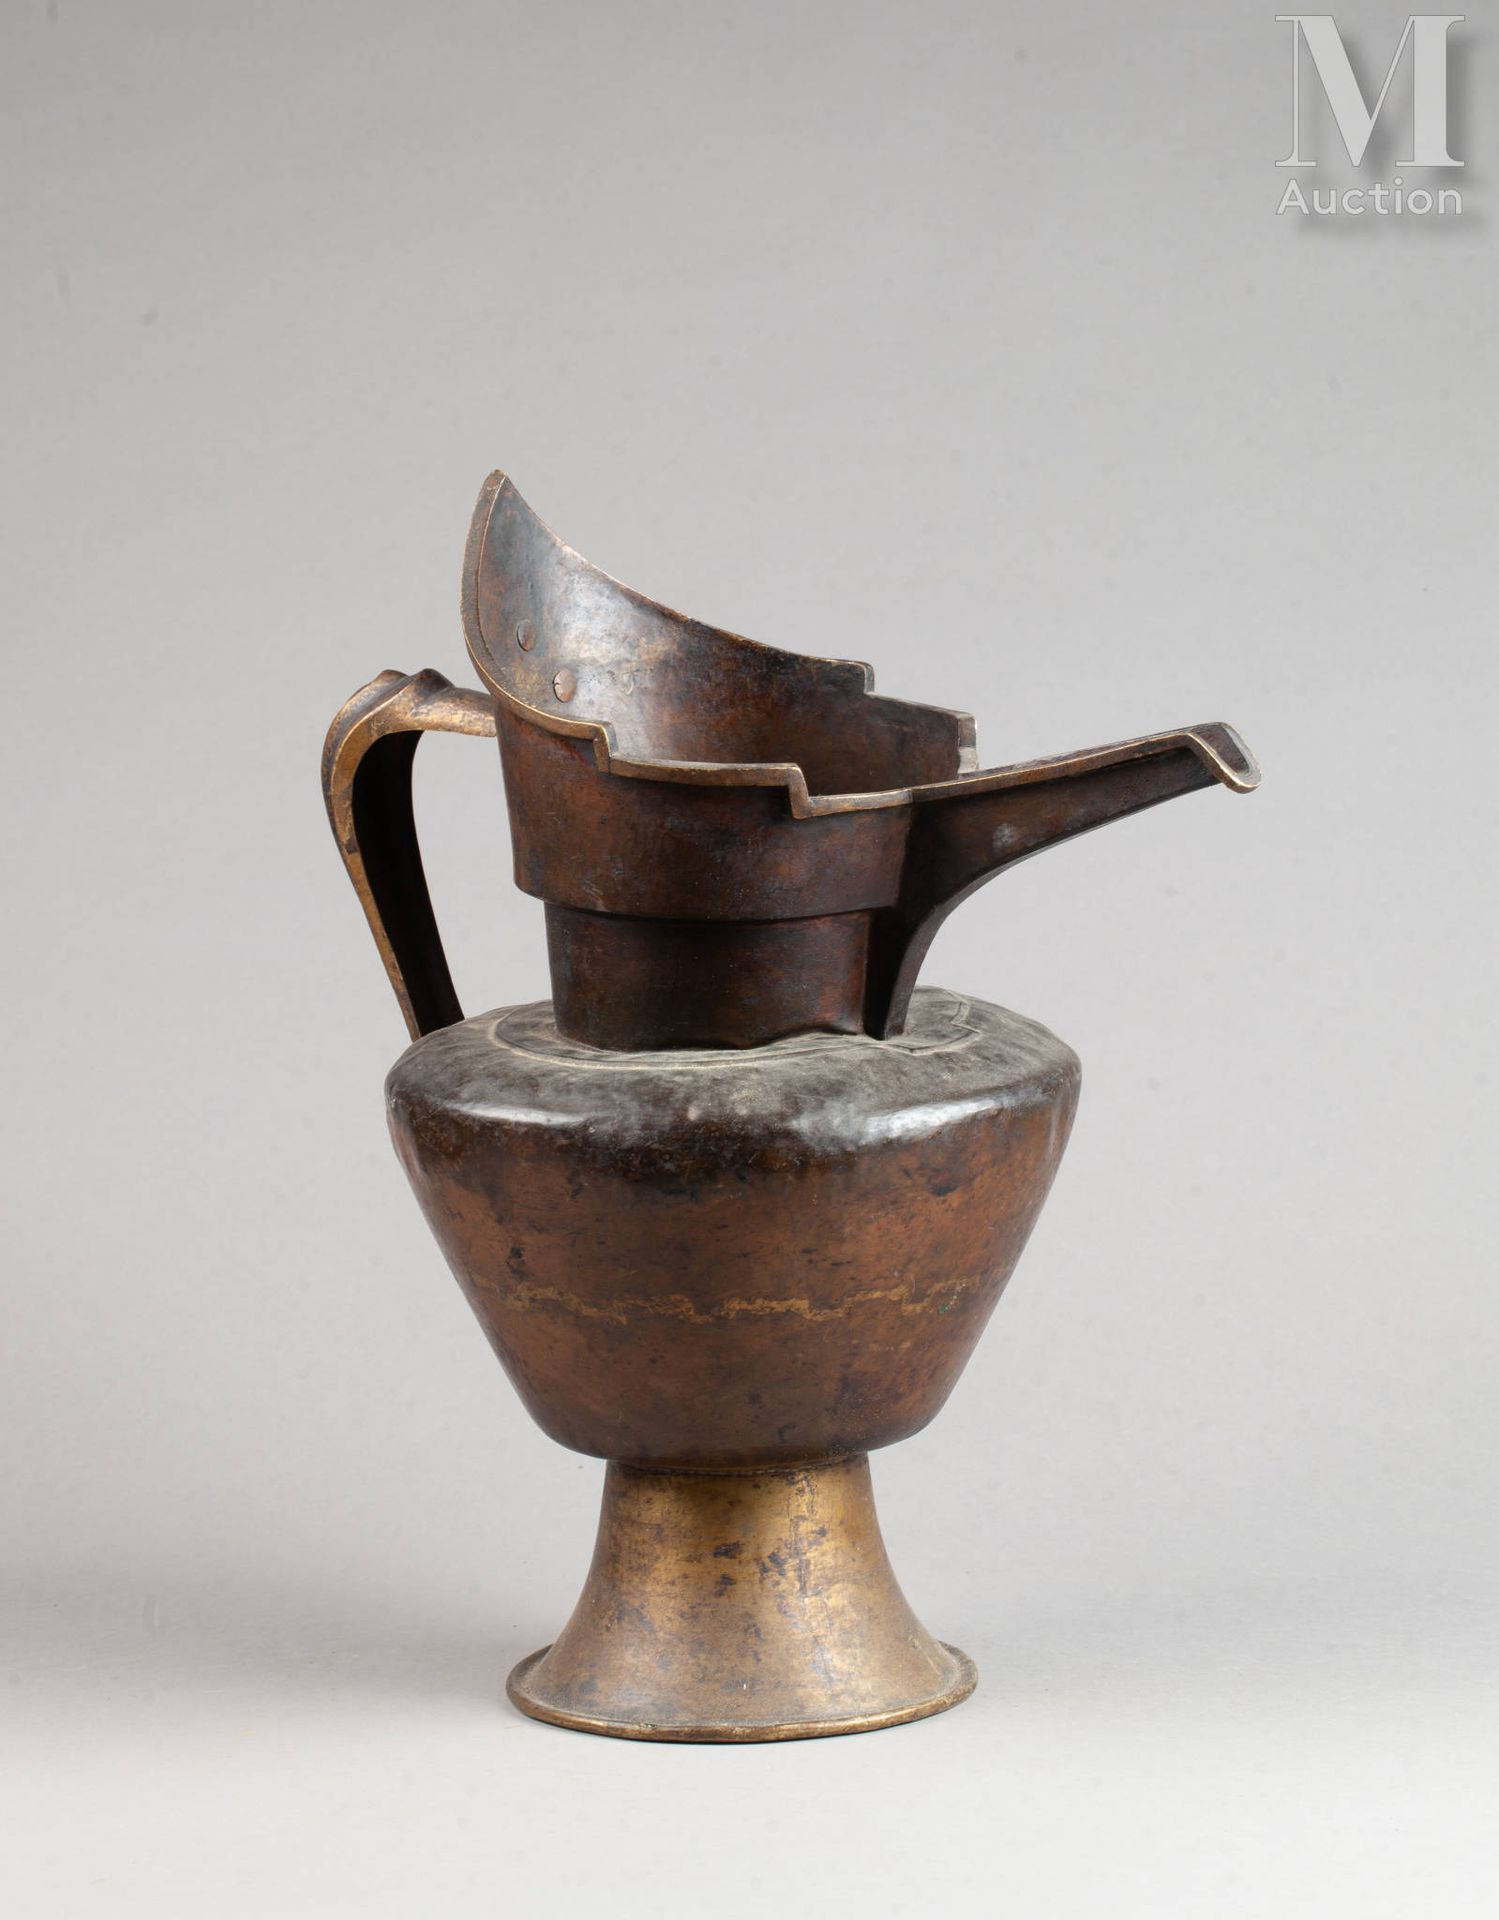 Aiguière 用于仪式沐浴 
铜锤敲打，组装，古旧的铜锈和岁月的痕迹 
尼泊尔，19 世纪 
43.5 x 39 厘米